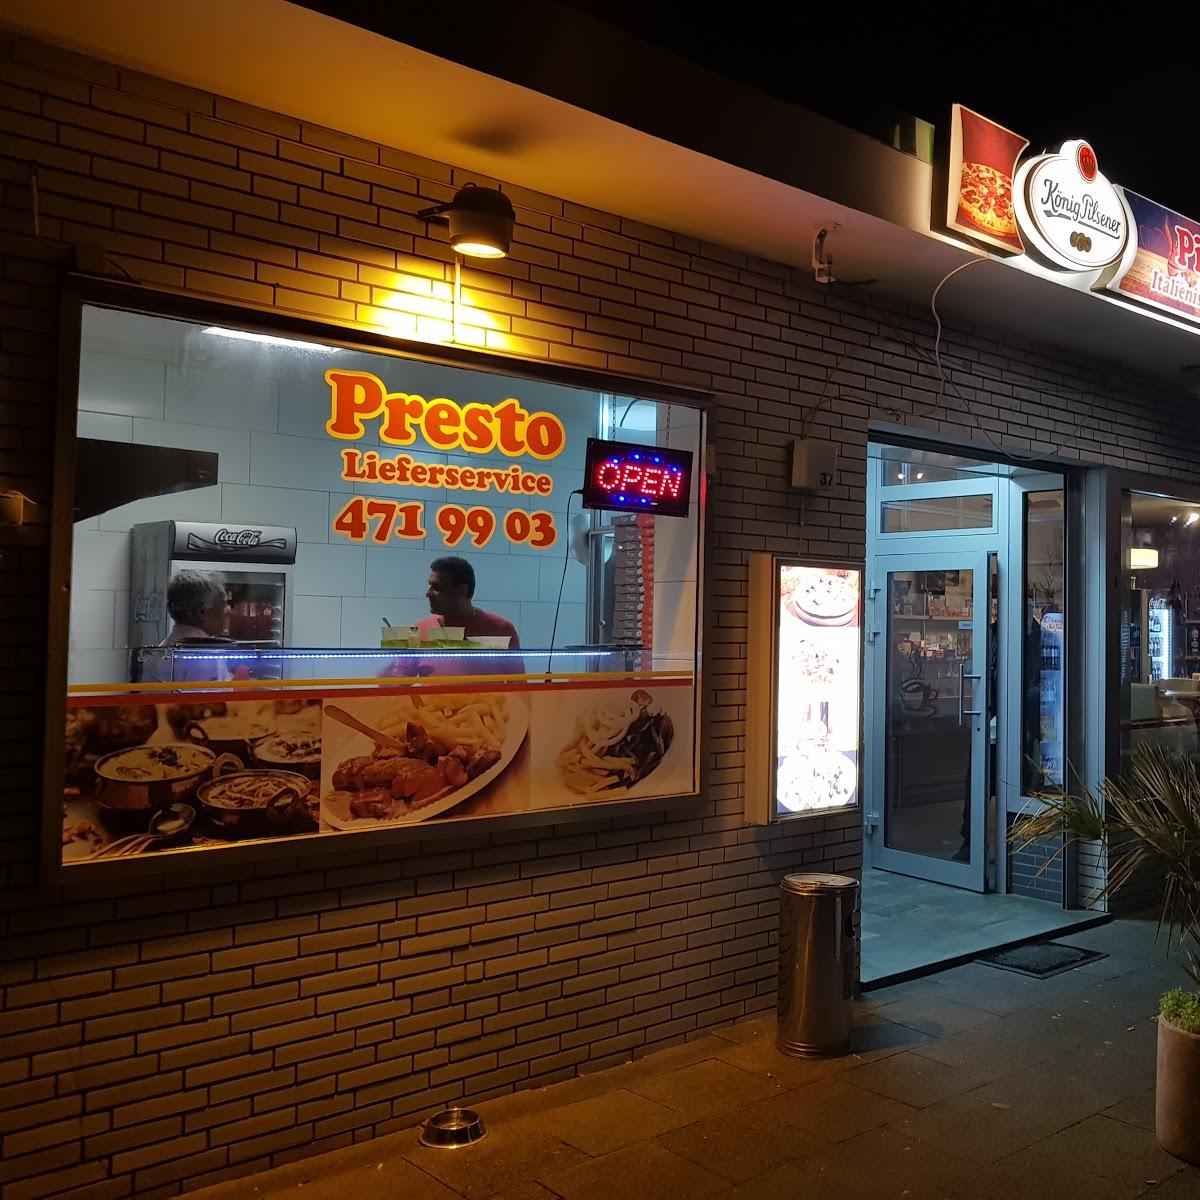 Restaurant "Pizzeria Presto " in Dinslaken